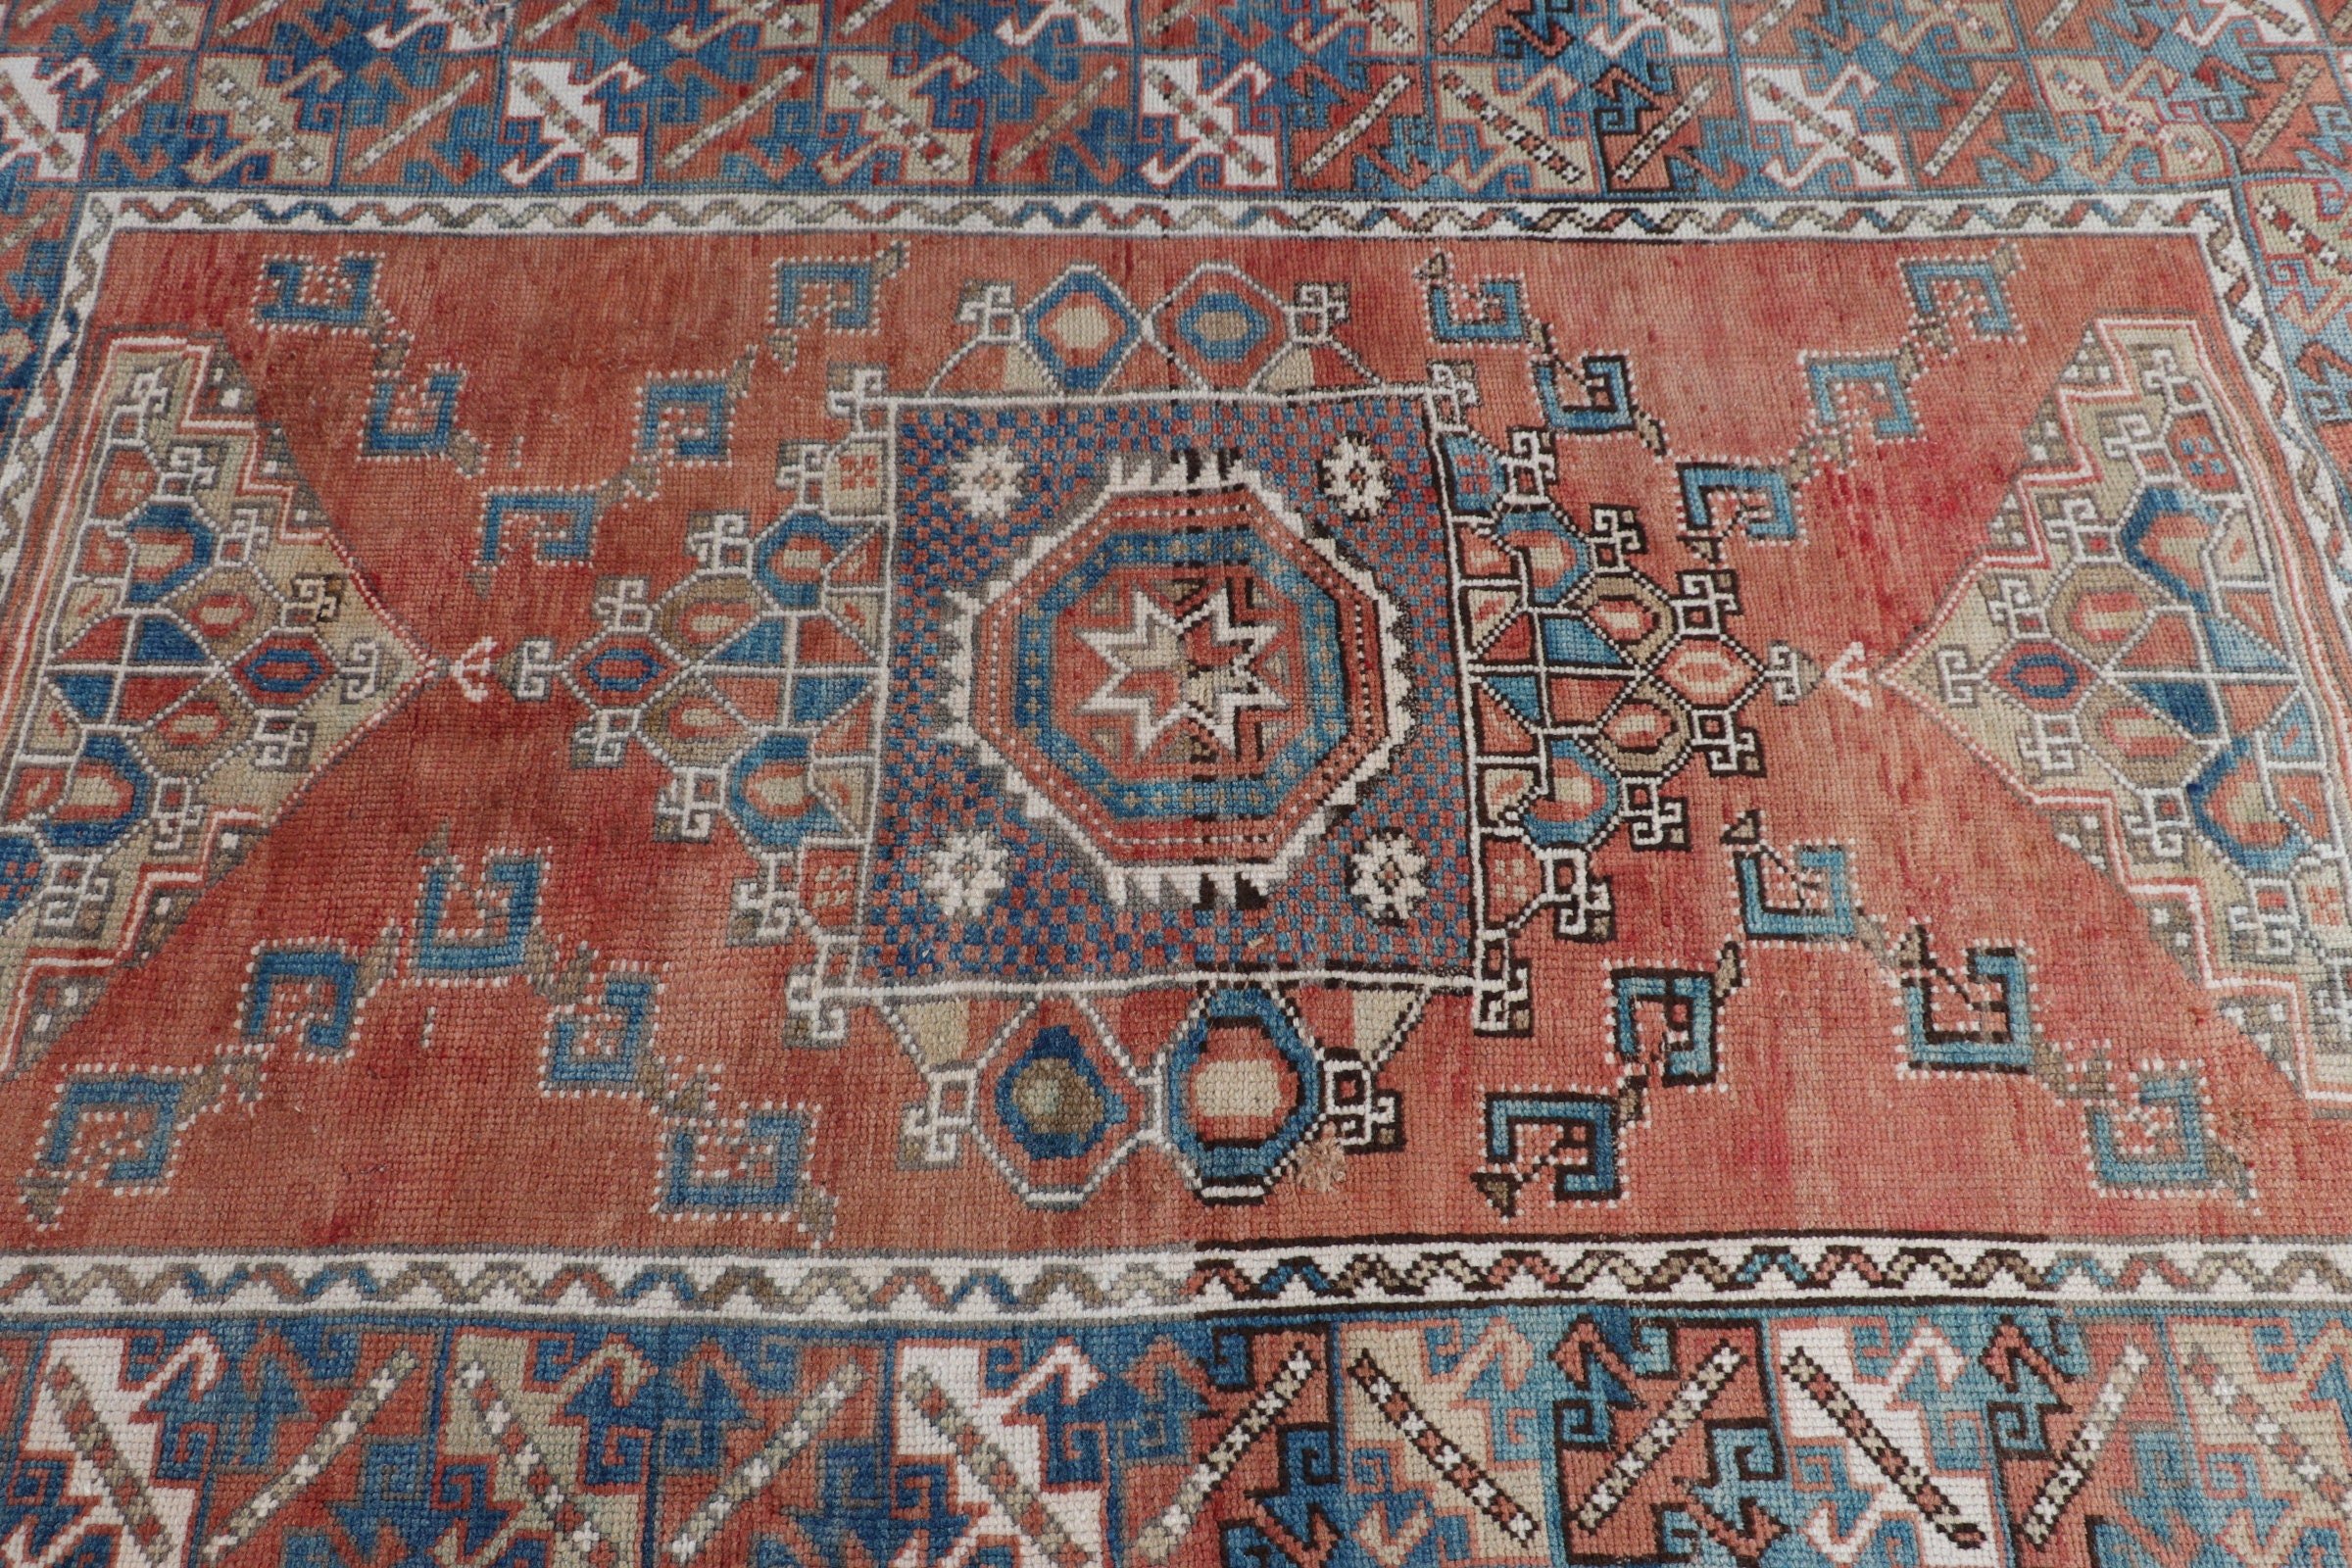 Oriental Rugs, Turkey Rug, Living Room Rugs, Floor Rug, 4.6x6.9 ft Area Rug, Turkish Rug, Vintage Rug, Orange Anatolian Rugs, Kitchen Rug